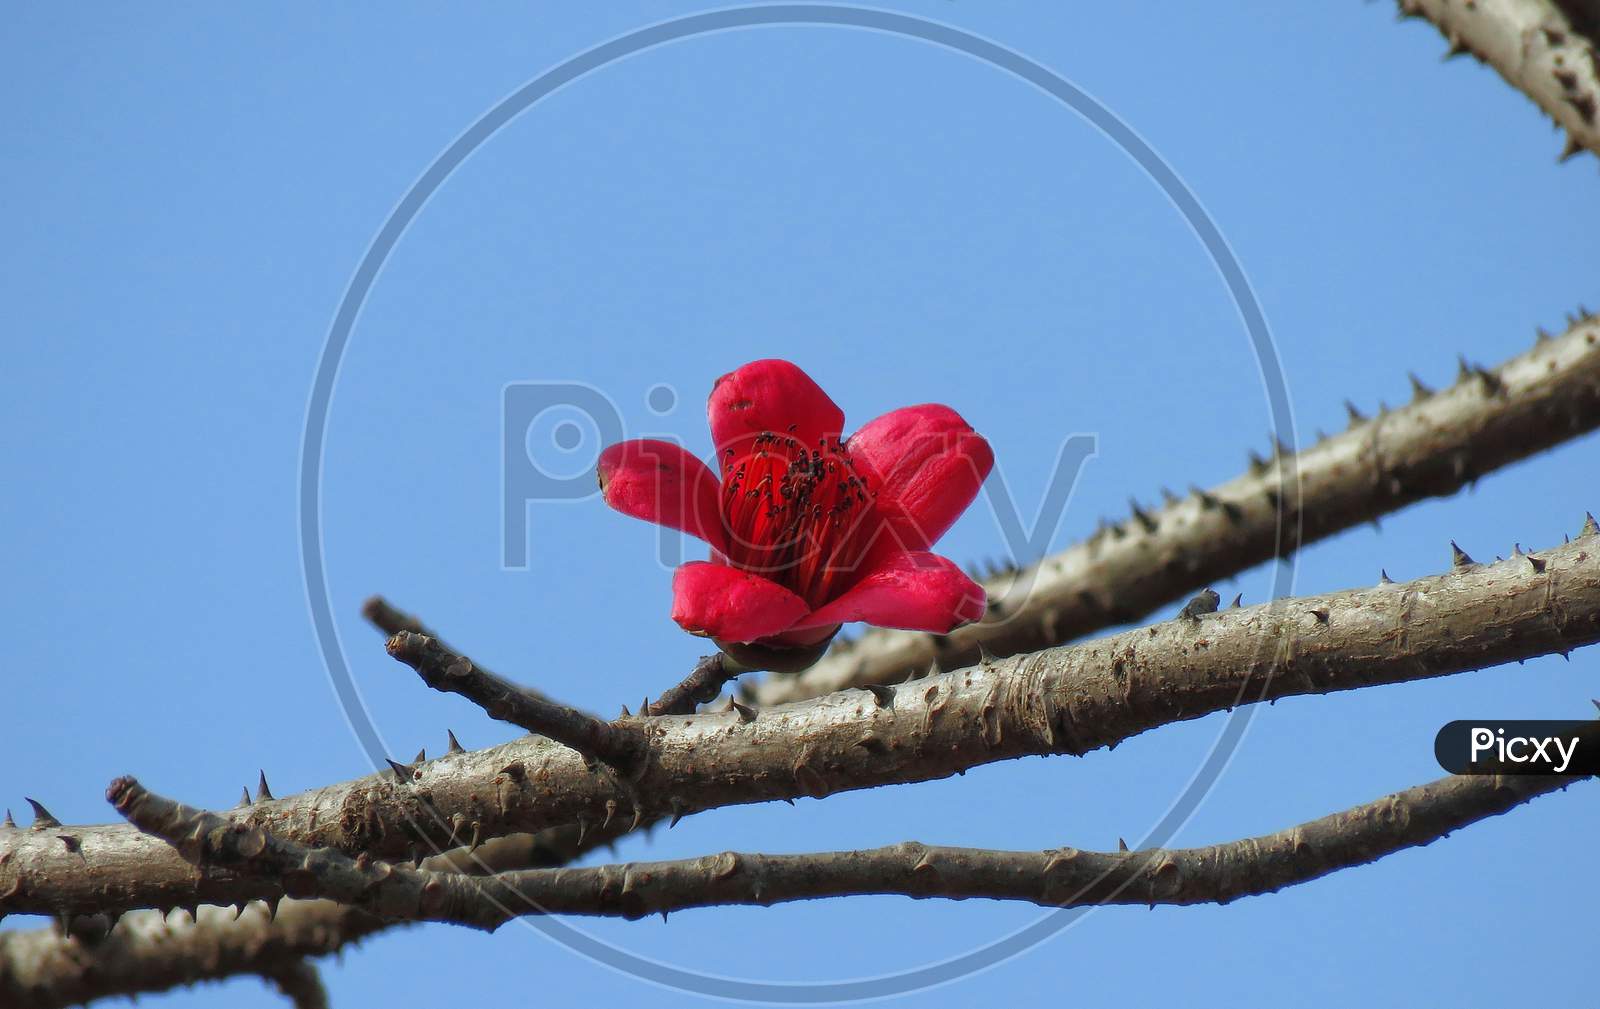 Bombax ceiba flower,Beautiful flower on the tree,red flower on the tree,thorn tree,red flower against blue sky.